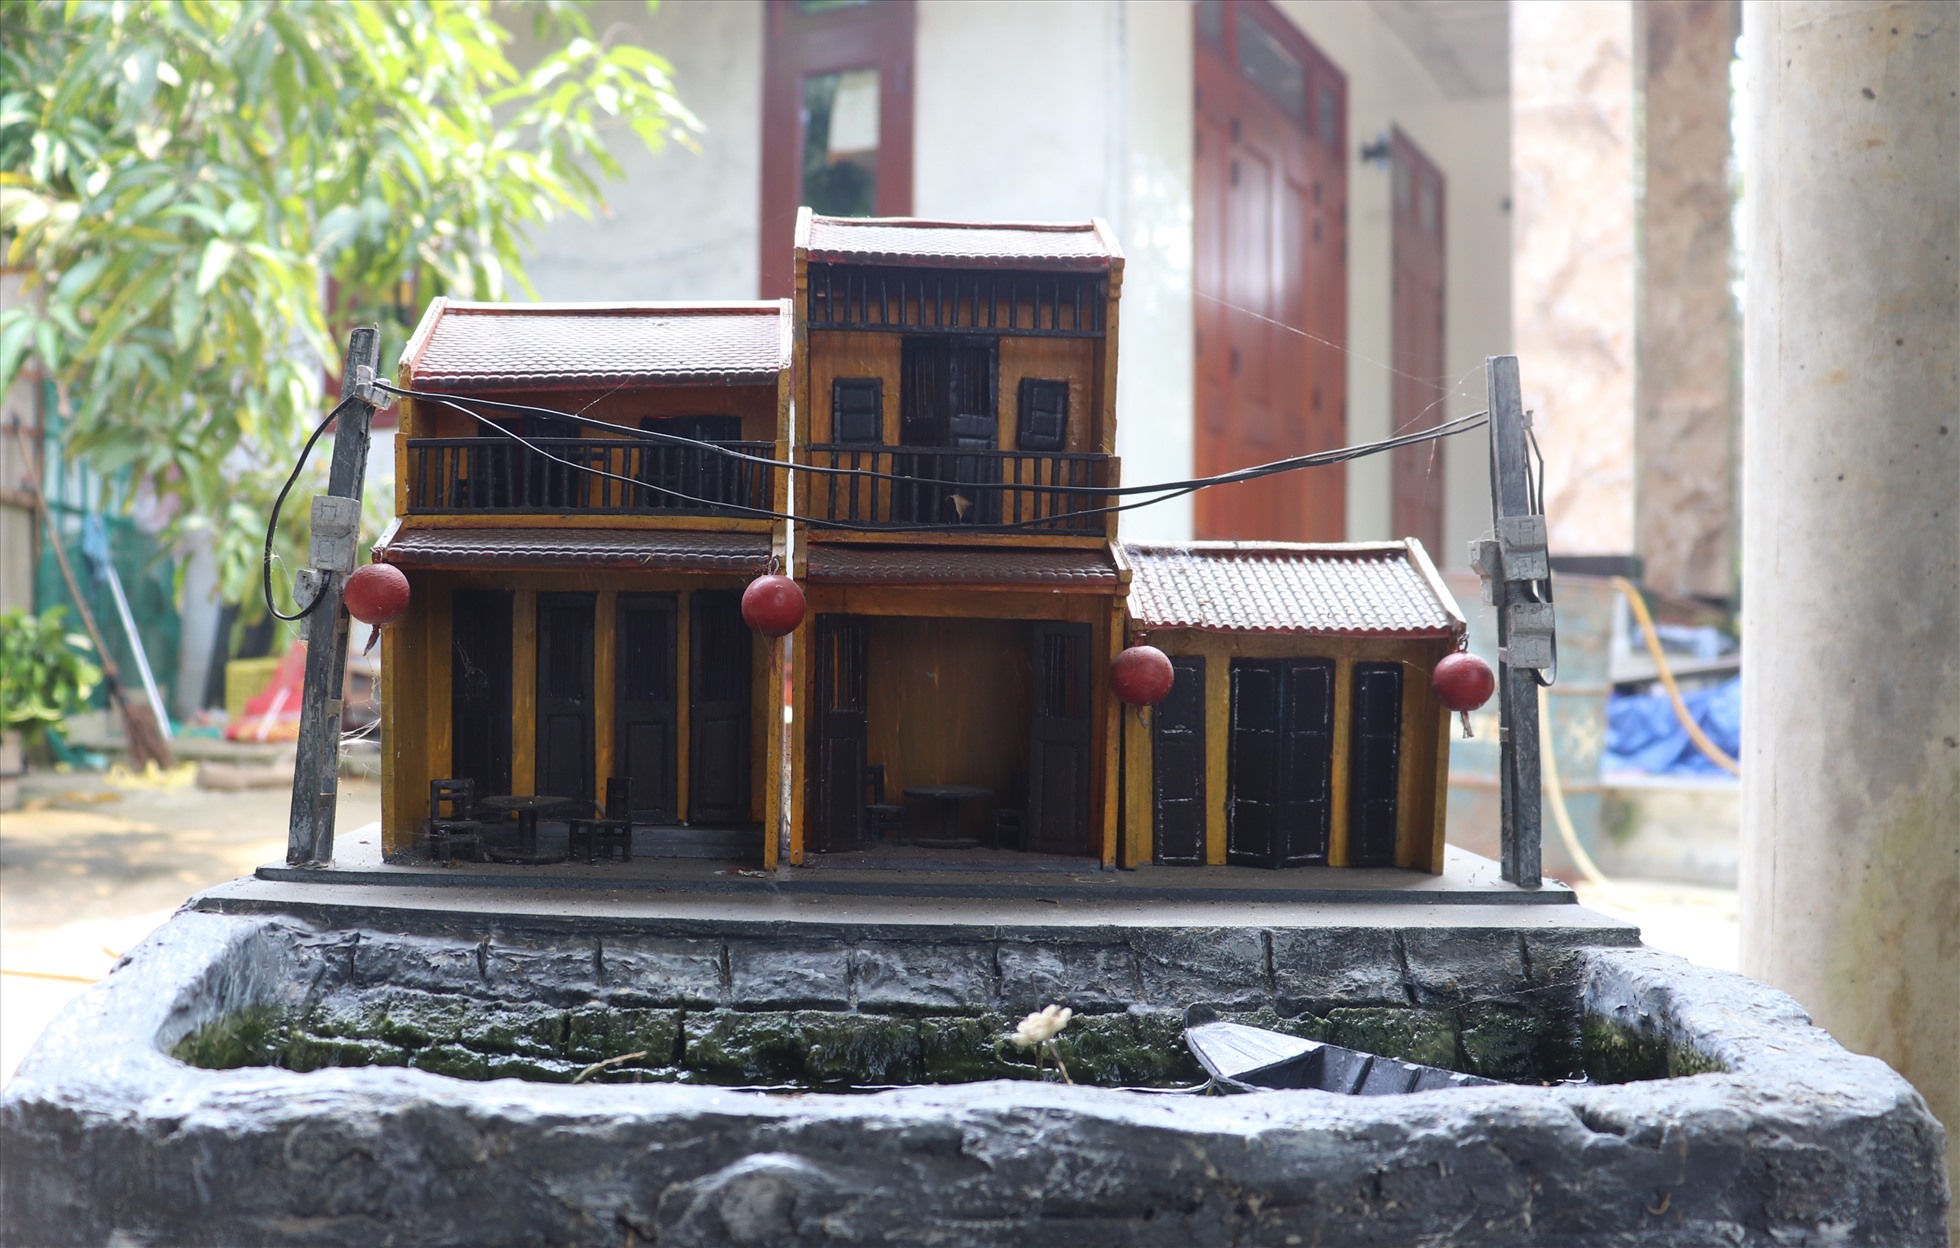 Tea House  Chốn bình yên giữa khu vườn xanh mướt  Atelier Deshaus  Hội  Kiến Trúc Sư Việt Nam